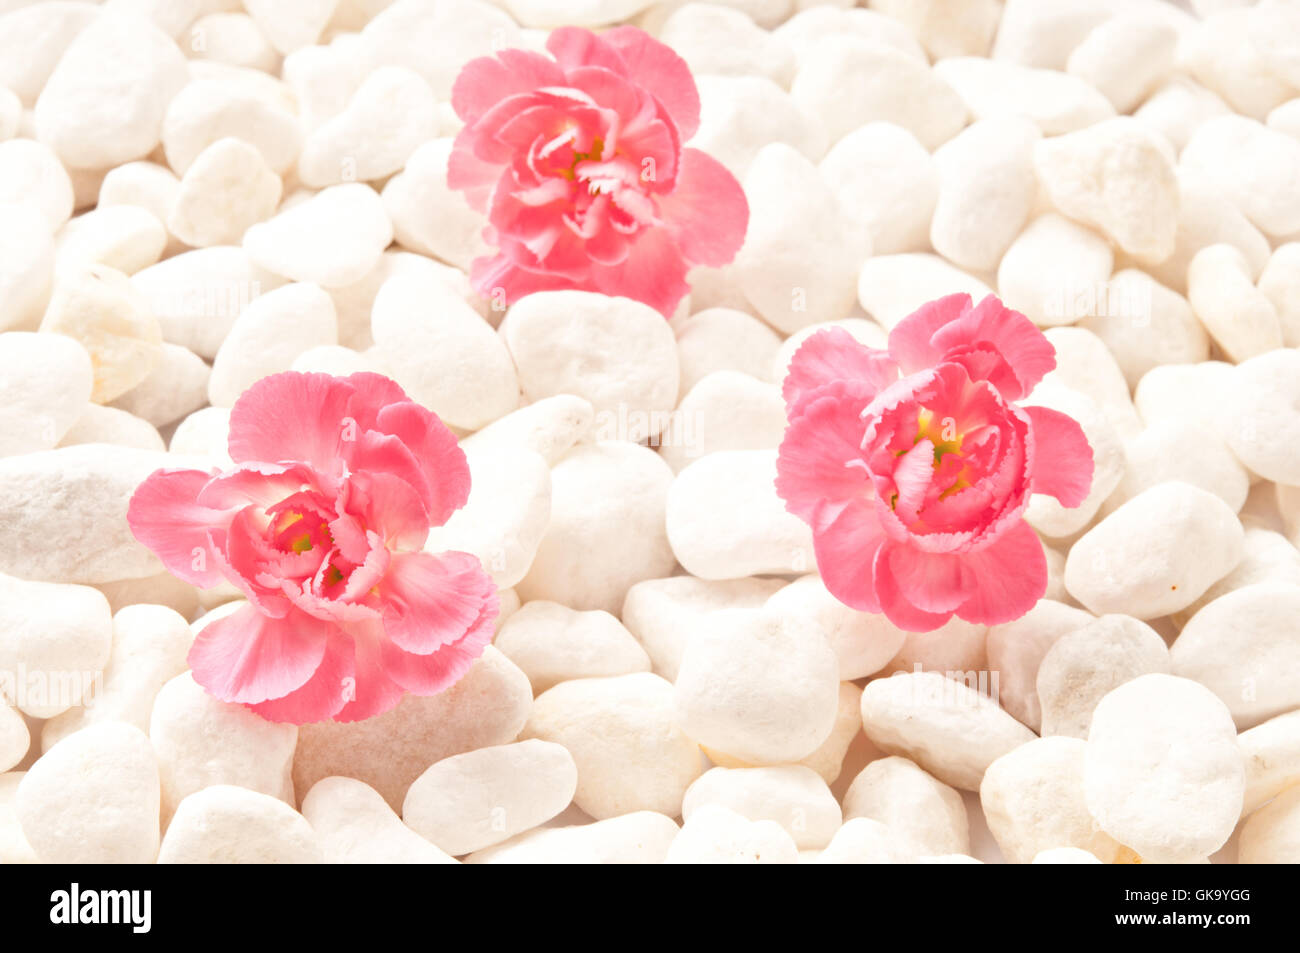 Achtsamkeit-Konzept, rosa Blume auf weißen Steinen Stockfoto